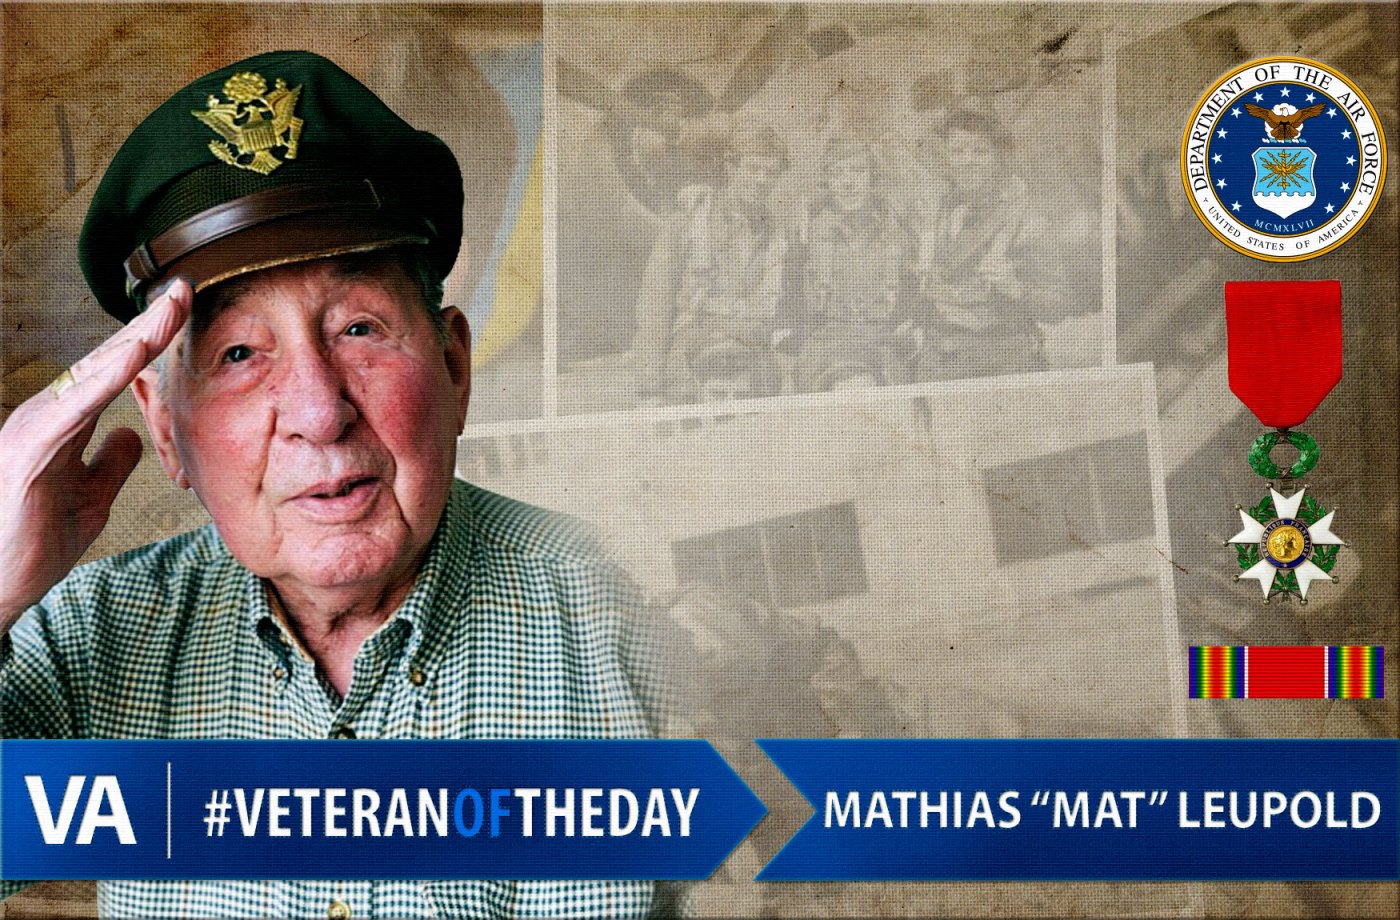 Mathias "Mat" Leupold - Veteran of the Day